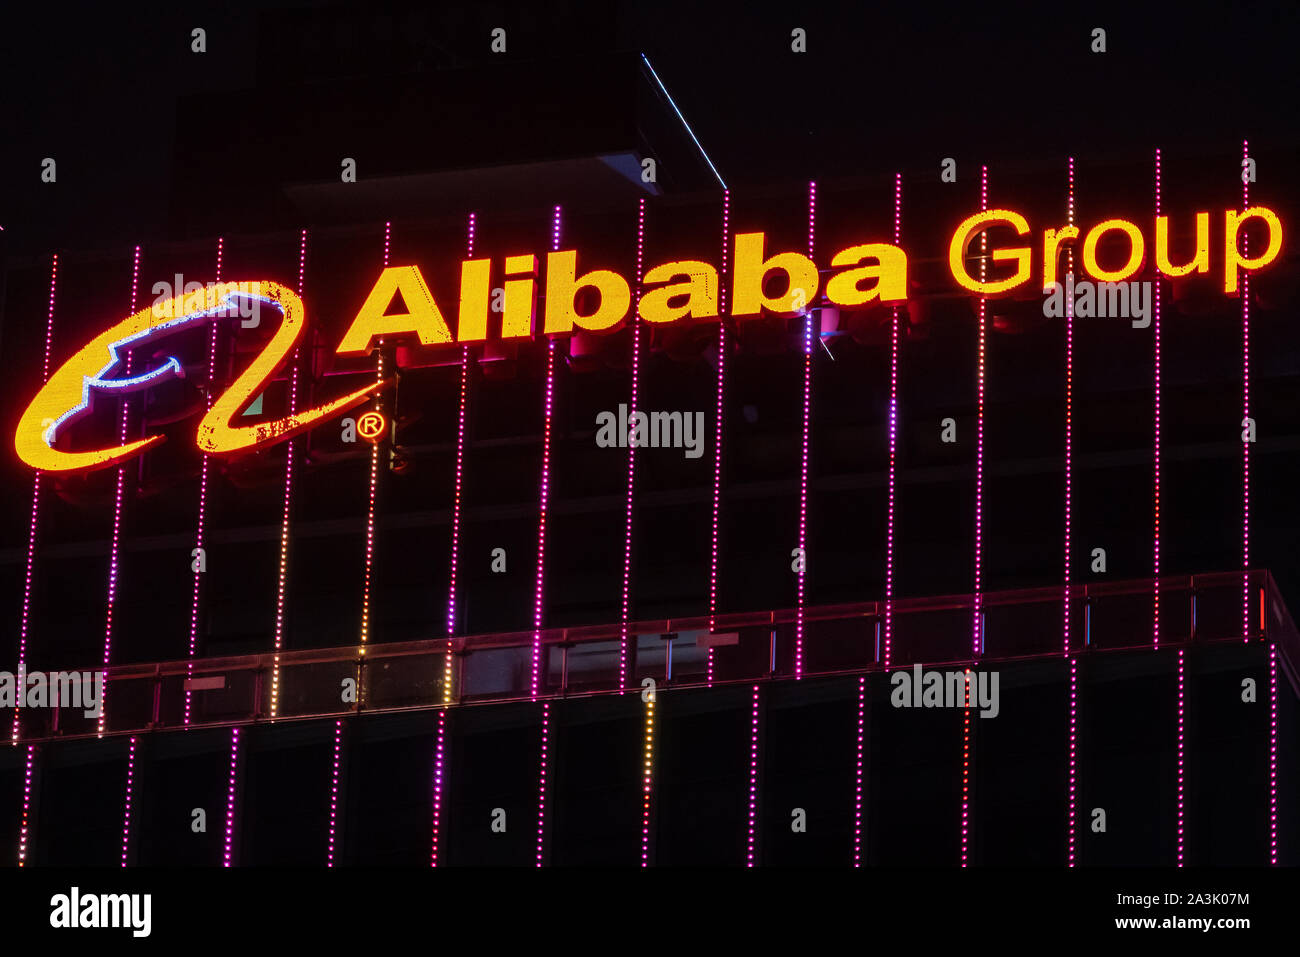 Shenzhen, Guangdong, Cina. 5 Ottobre, 2019. Multinazionale cinese e-commerce, retail, Internet e il conglomerato di tecnologia società holding del Gruppo Alibaba logo che si vede sulla cima di un grattacielo di notte. Credito: Alex Tai/SOPA Immagini/ZUMA filo/Alamy Live News Foto Stock